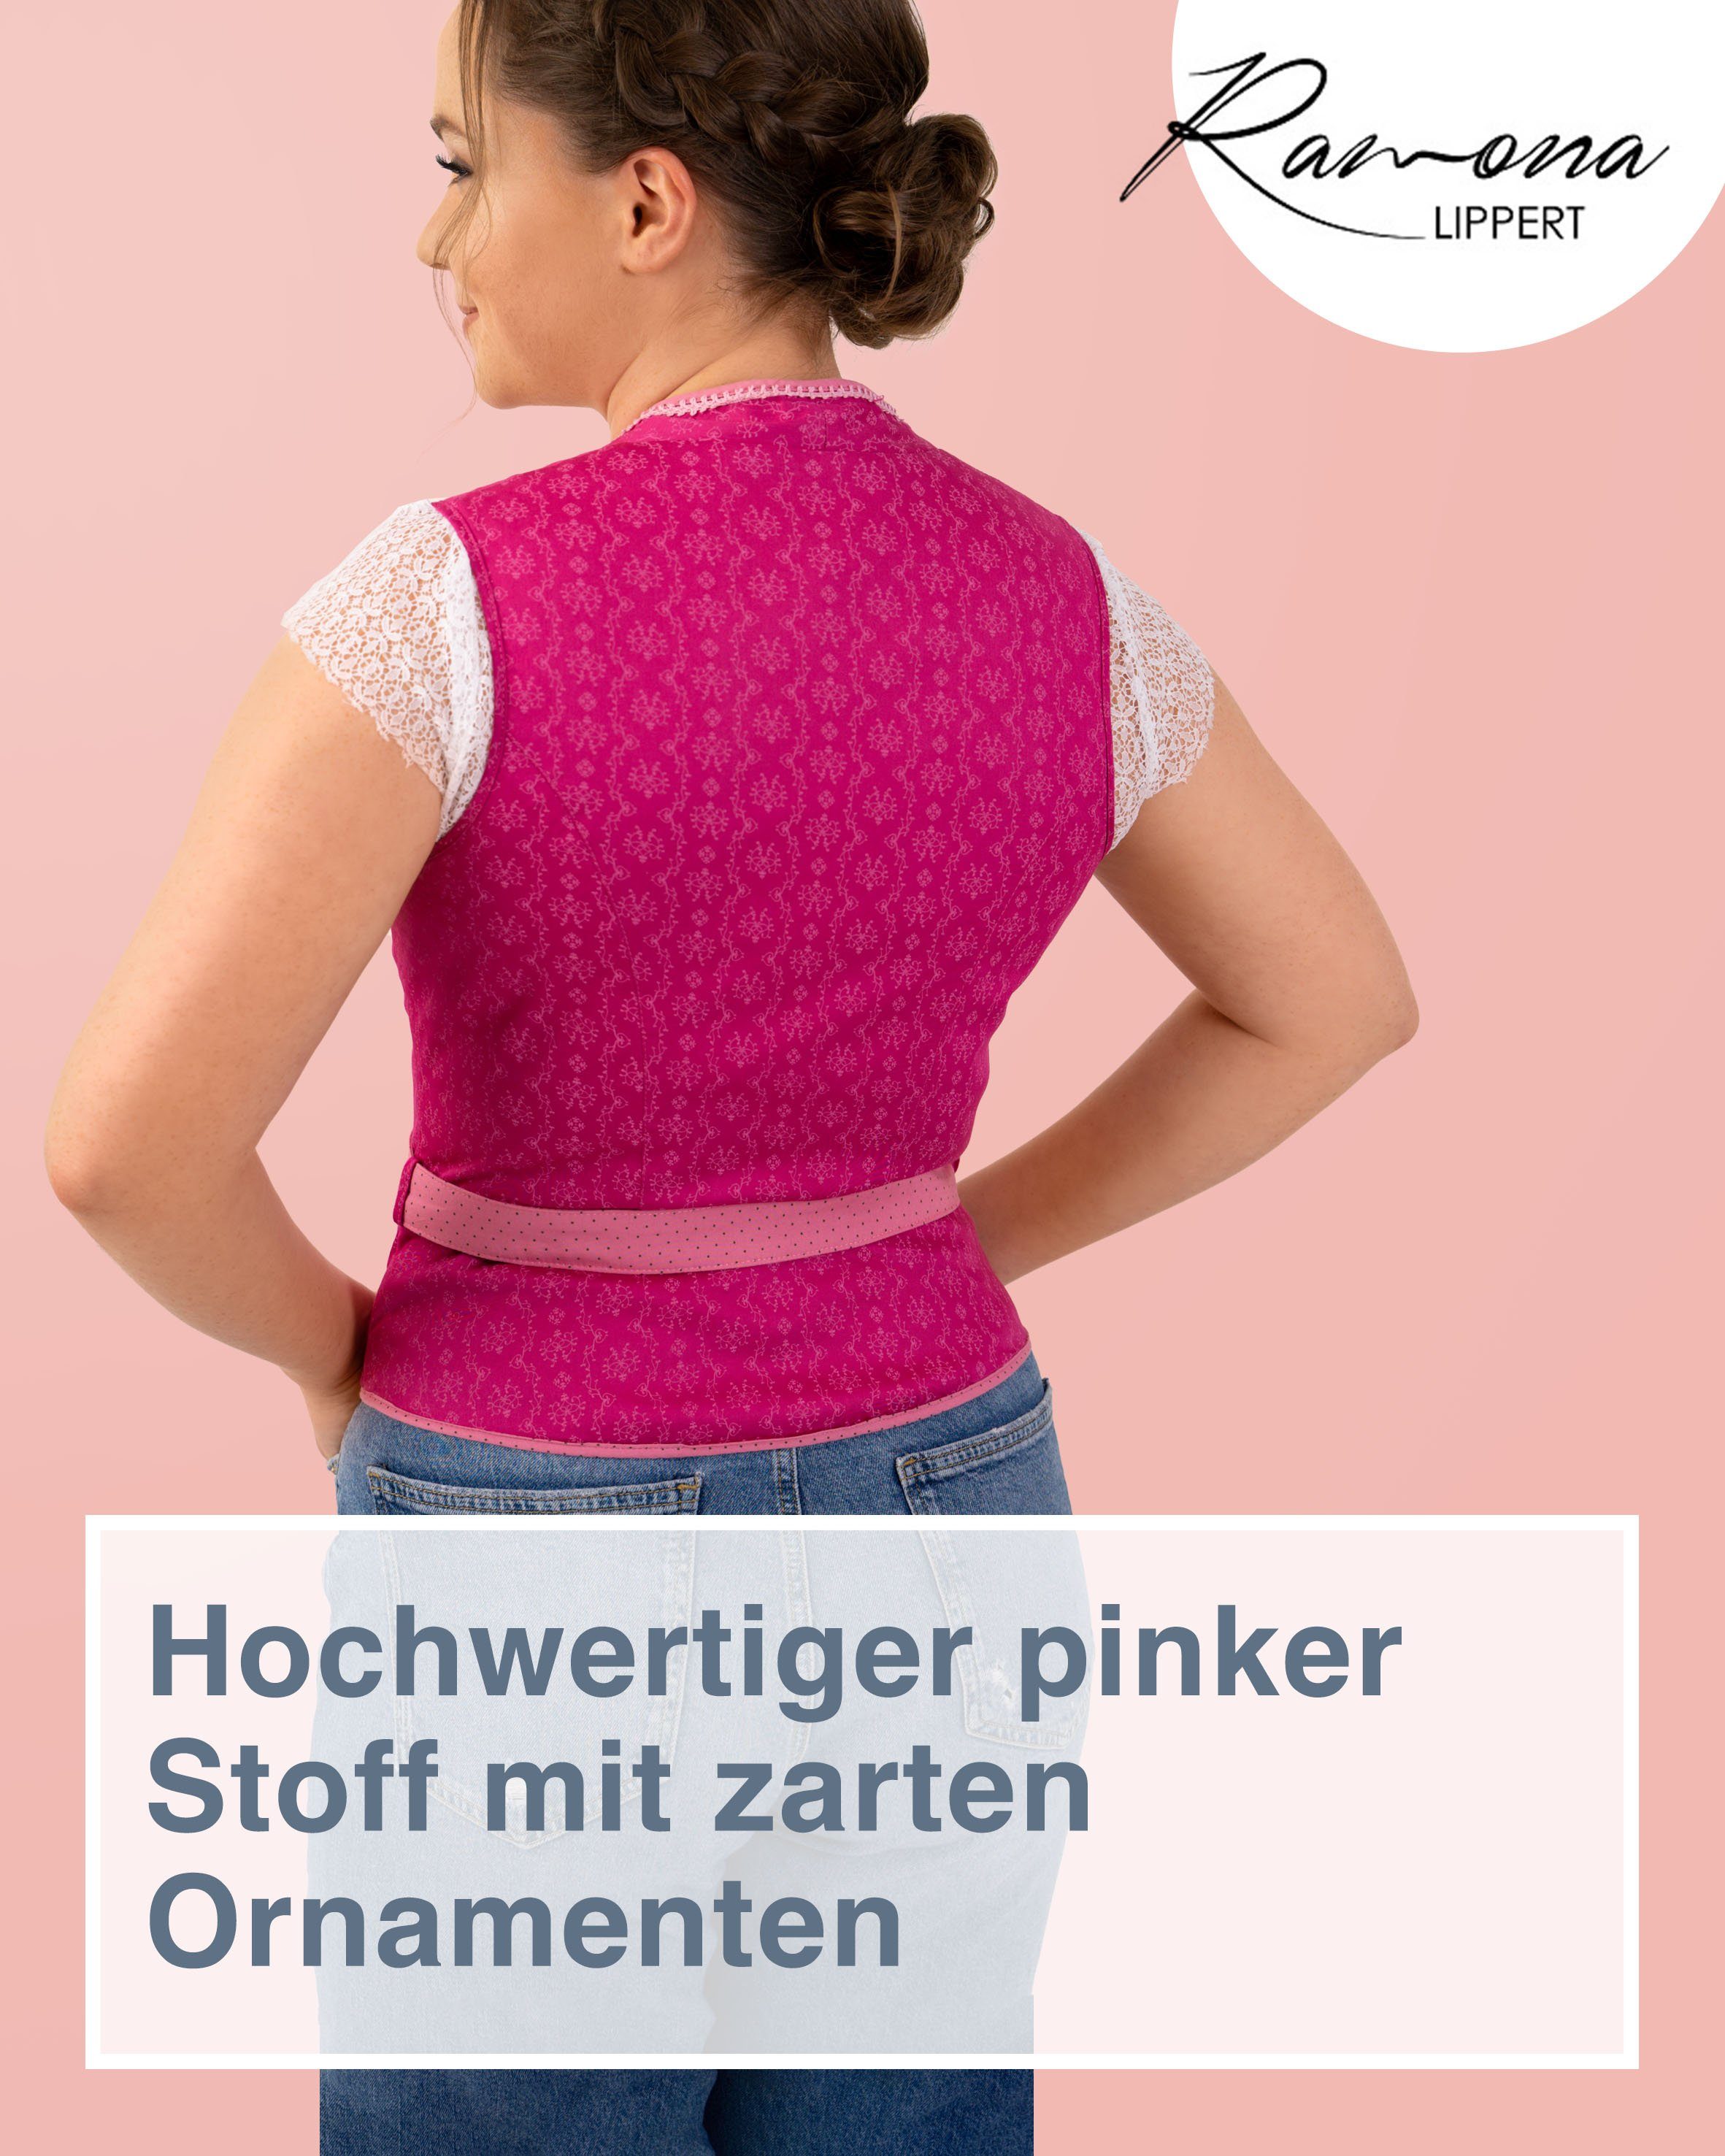 Ramona Lippert Trachtenbluse Mieder Nicole Knöpfe pink cm mit Gürtel Rückenlänge 51